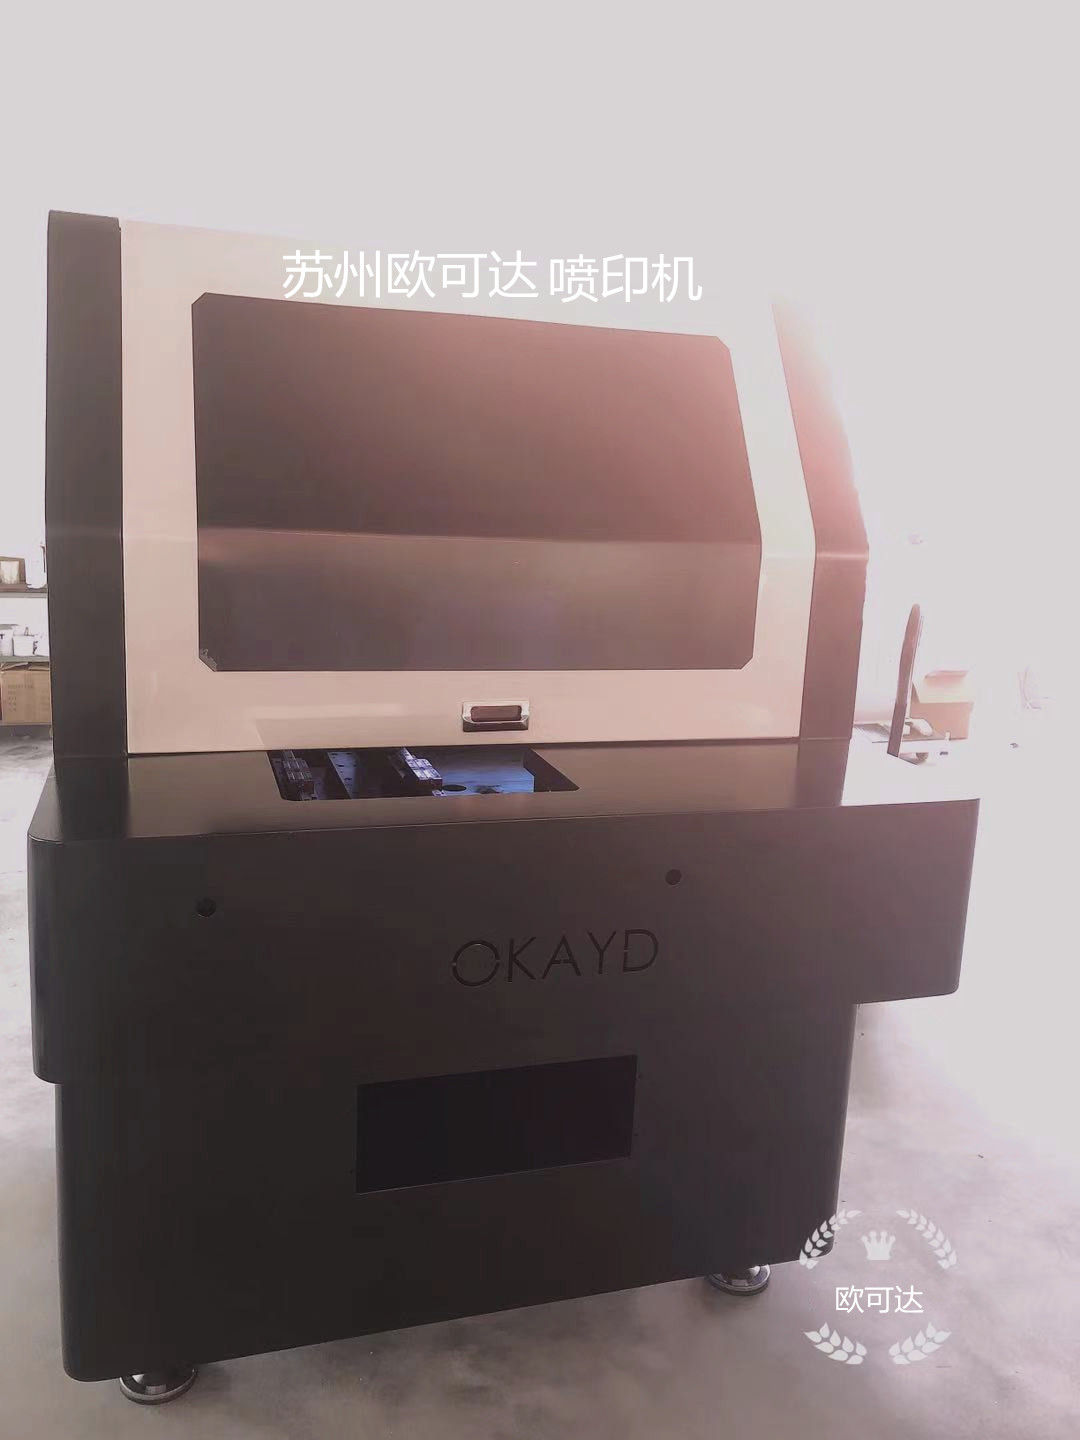 无锡网印机全自动丝印机文字喷印机苏州欧可达全自动多的印刷设备厂家